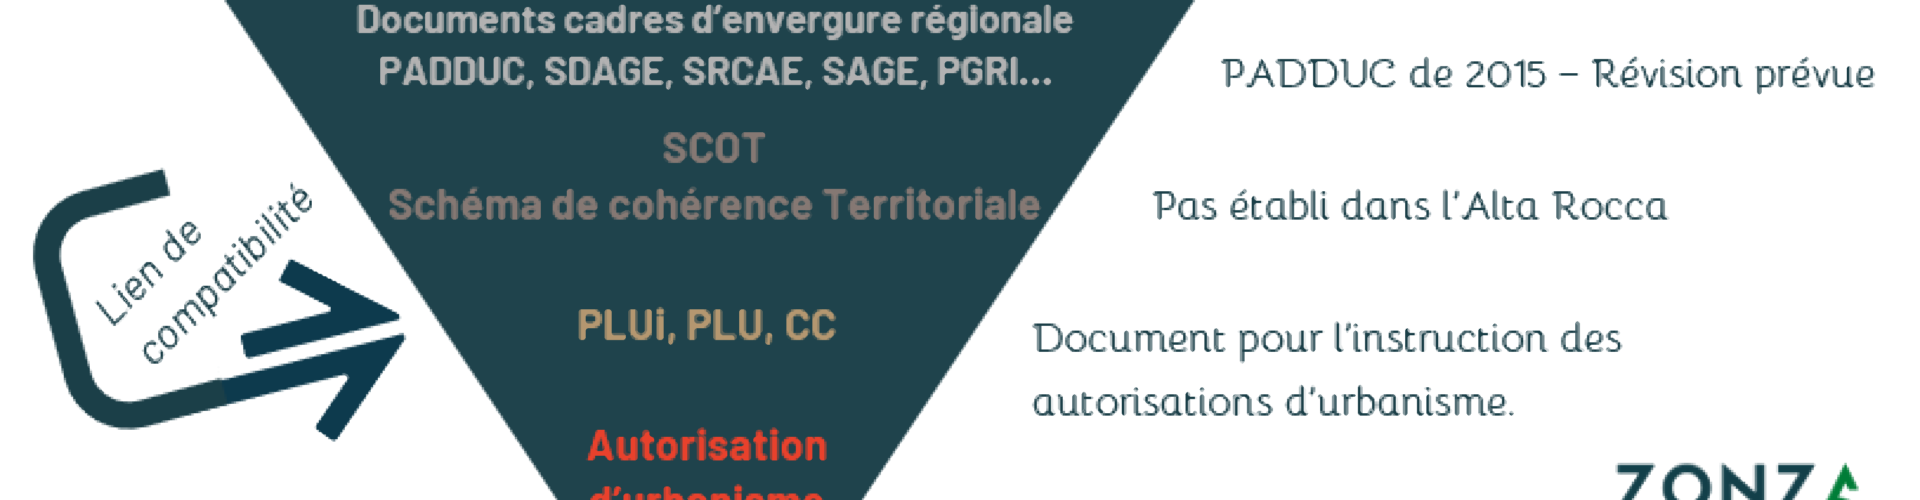 Approbation de la révision de la carte communale de la commune d'Ispagnac -  Ispagnac